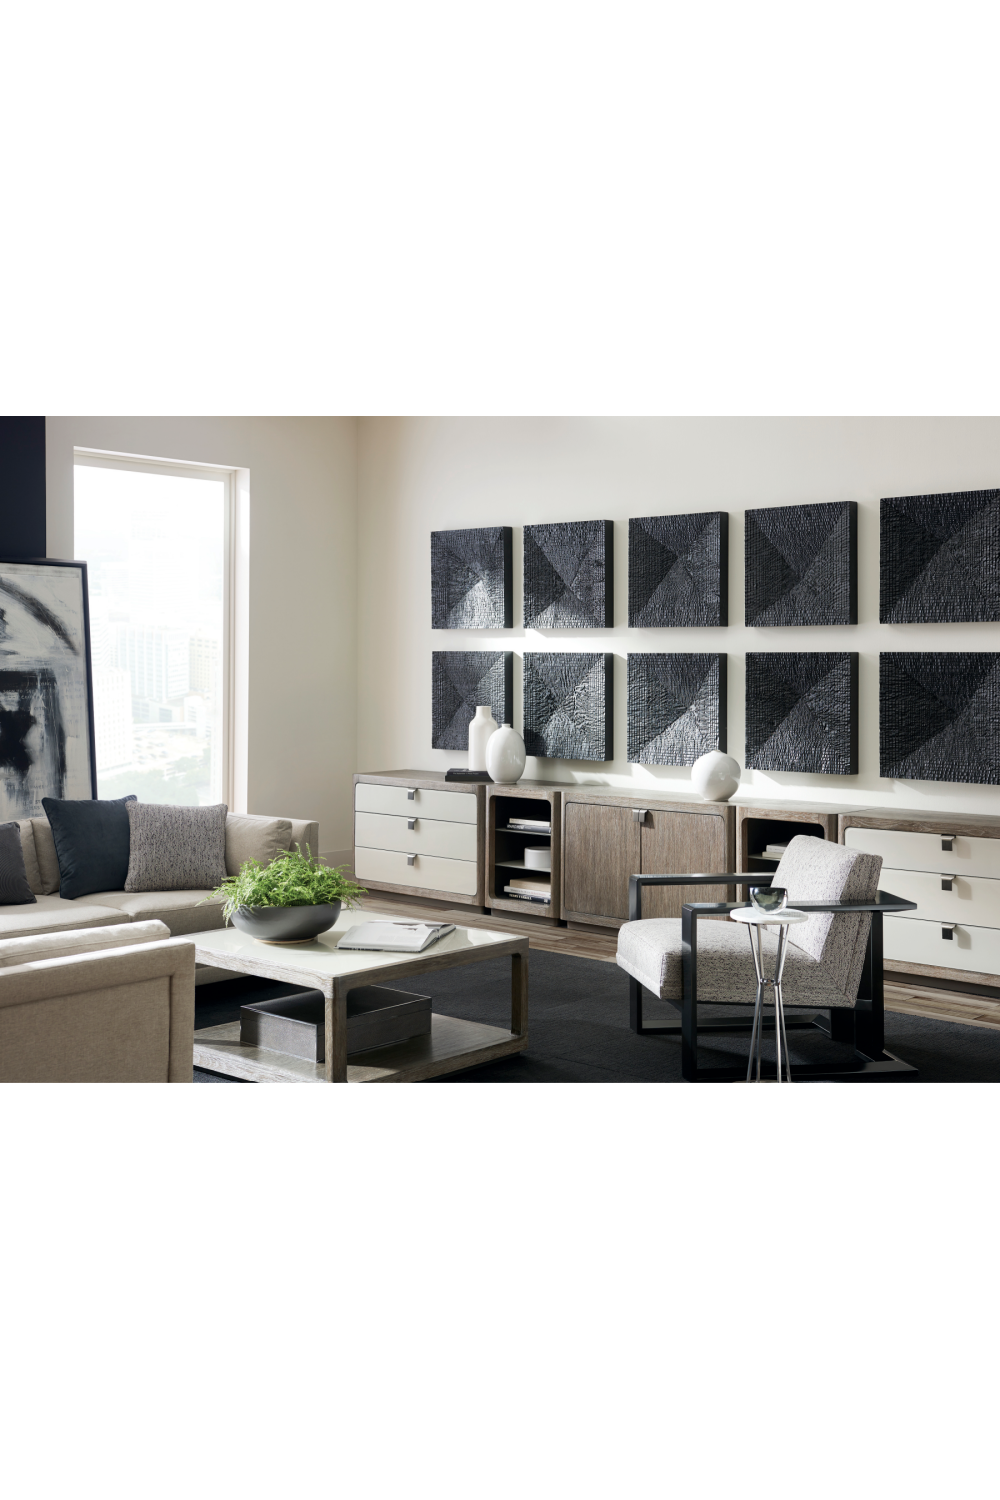 Gray Modern Sectional Sofa | Caracole Fusion | Oroa.com